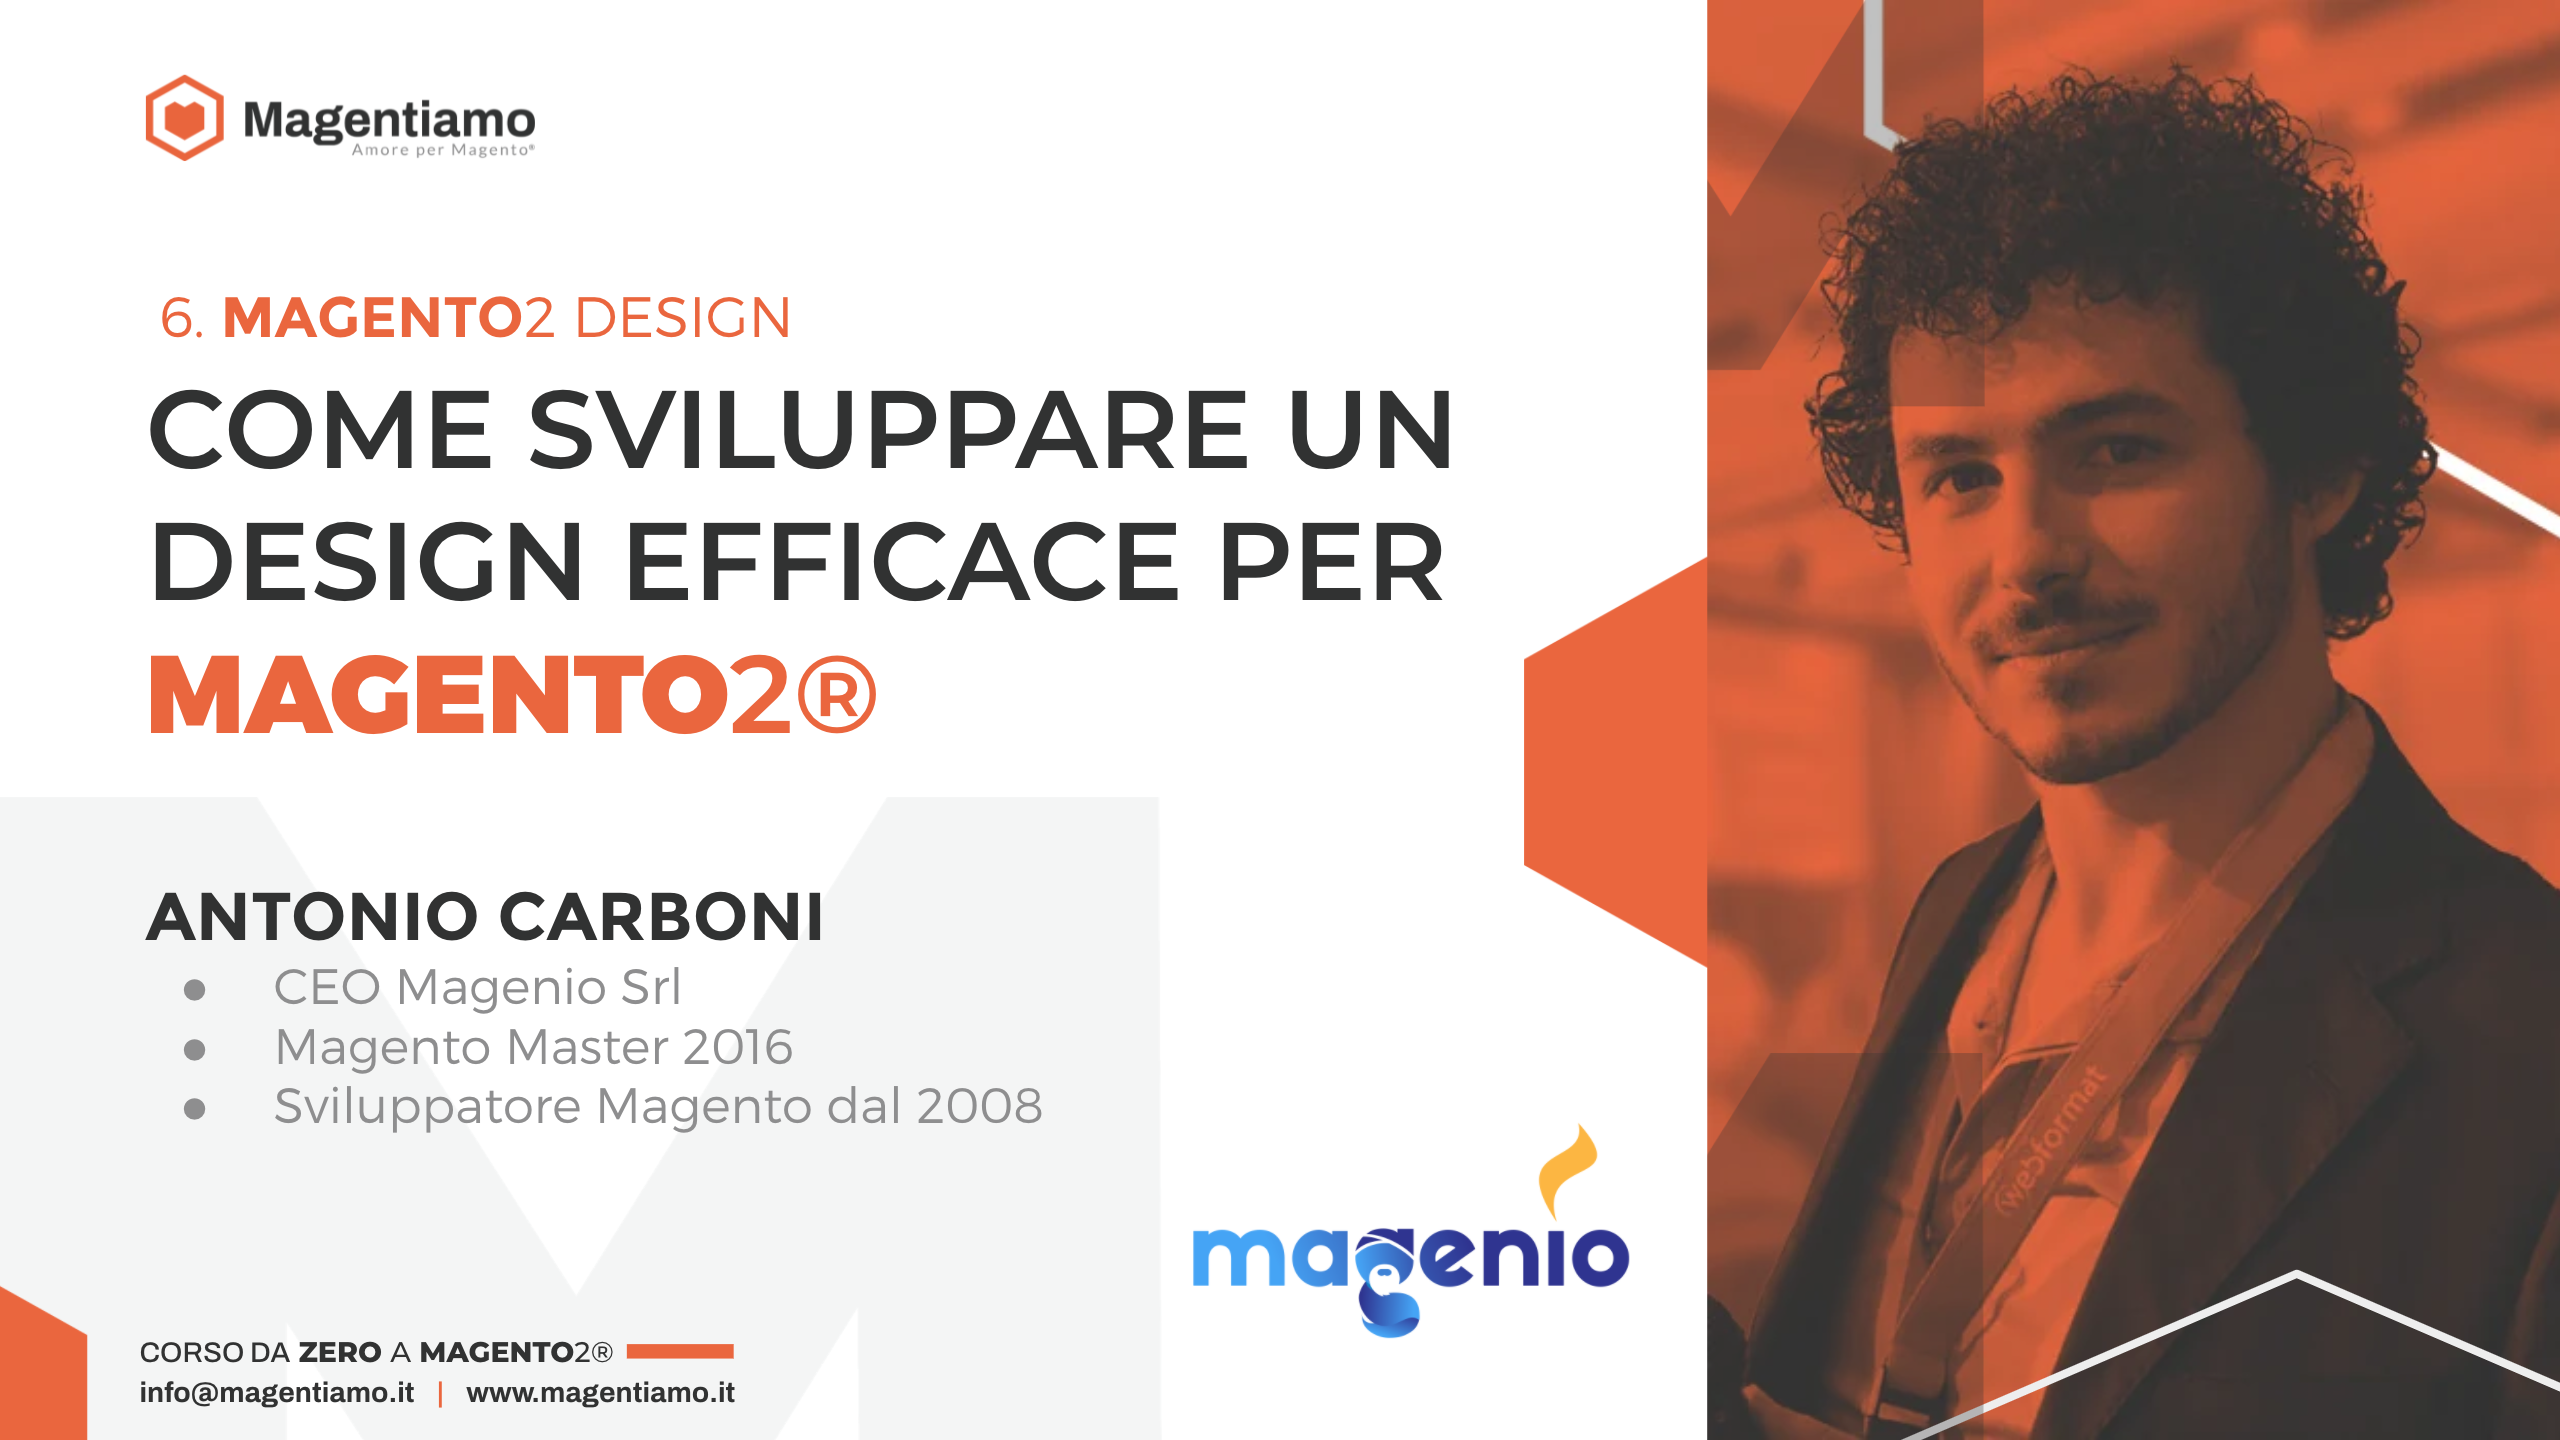 6. DESIGN - Come sviluppare un design efficace Magento 2 - Antonio Carboni